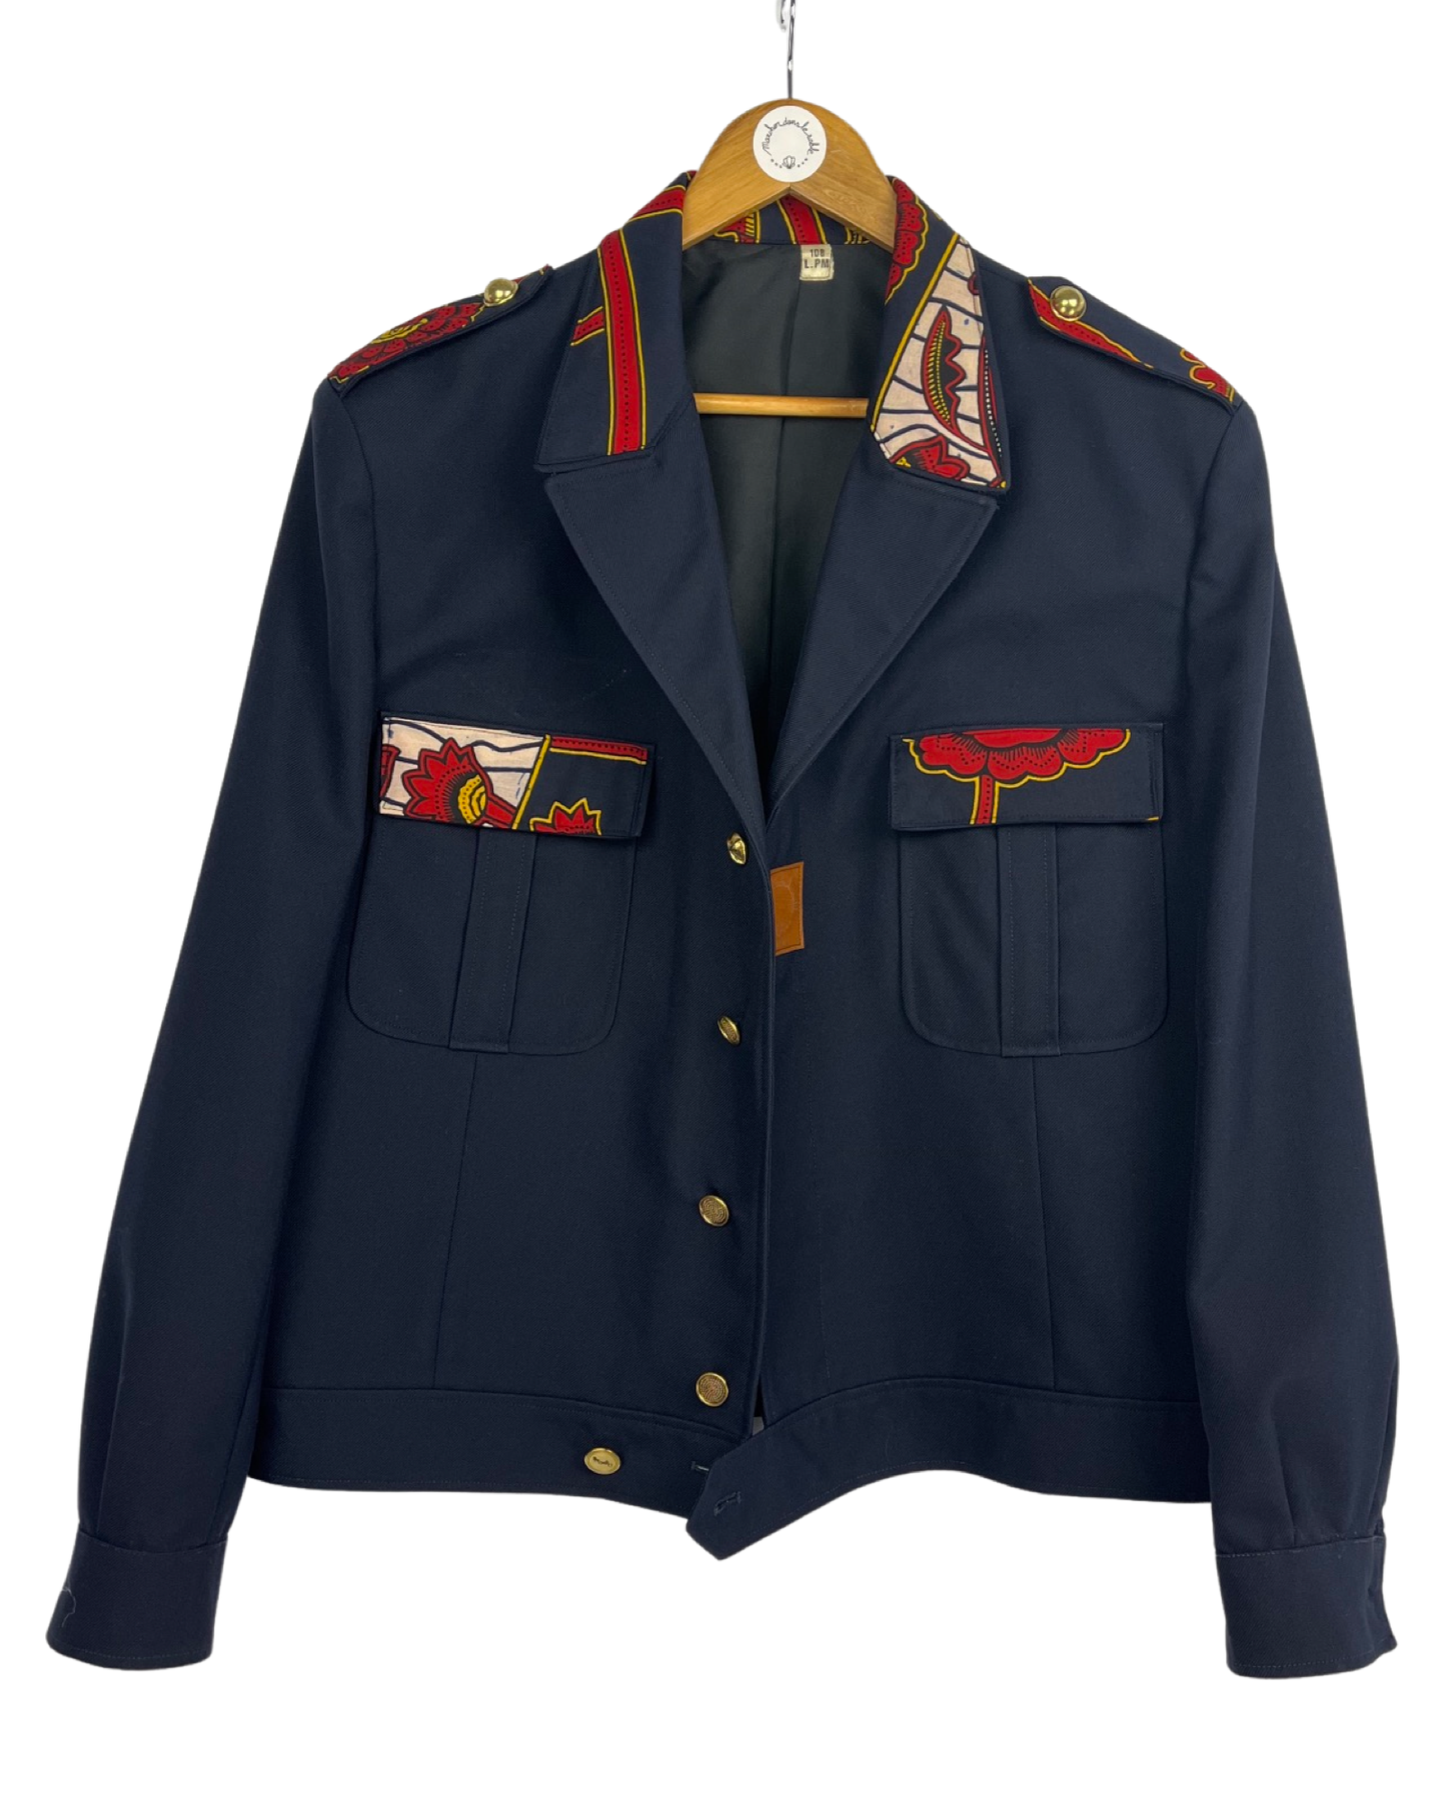 Military Wax Jacket